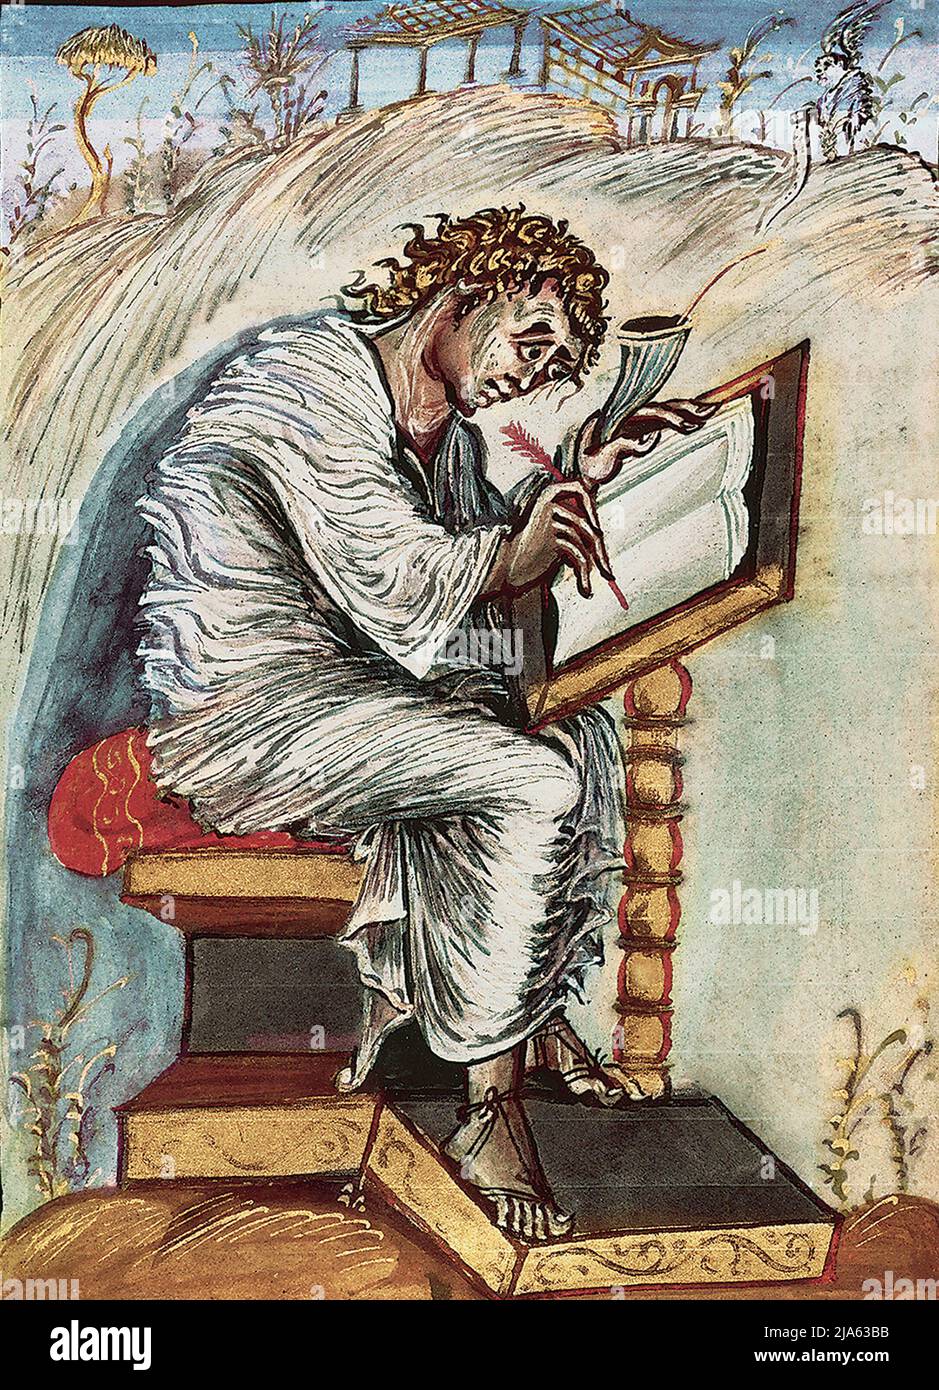 Matthäus aus den Evangelien von Ebbo, ein Bilderbuch aus dem 9.. Jahrhundert, das diese überraschend modernen und untypischen Illustrationen enthält Stockfoto